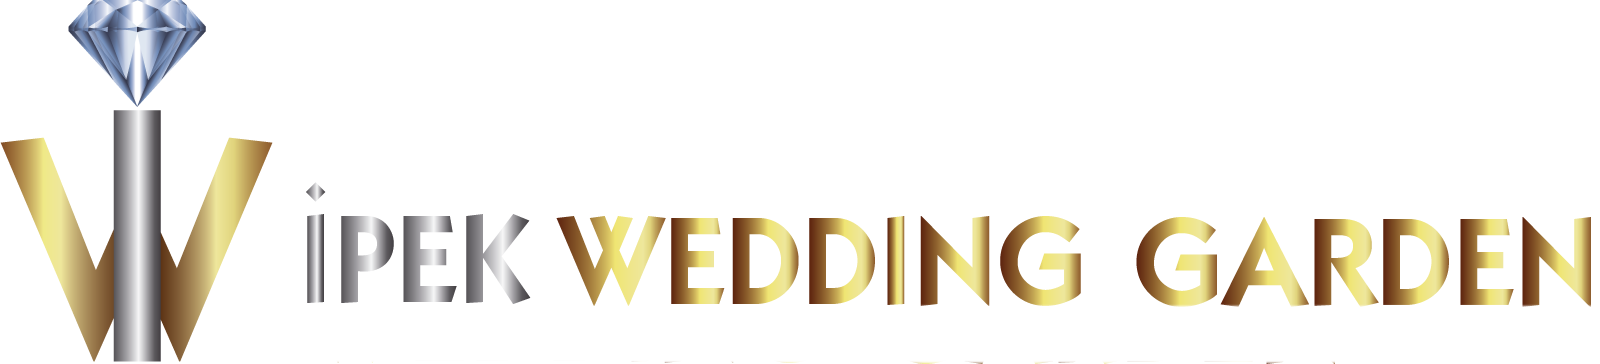 İpek Wedding Logo Yeni